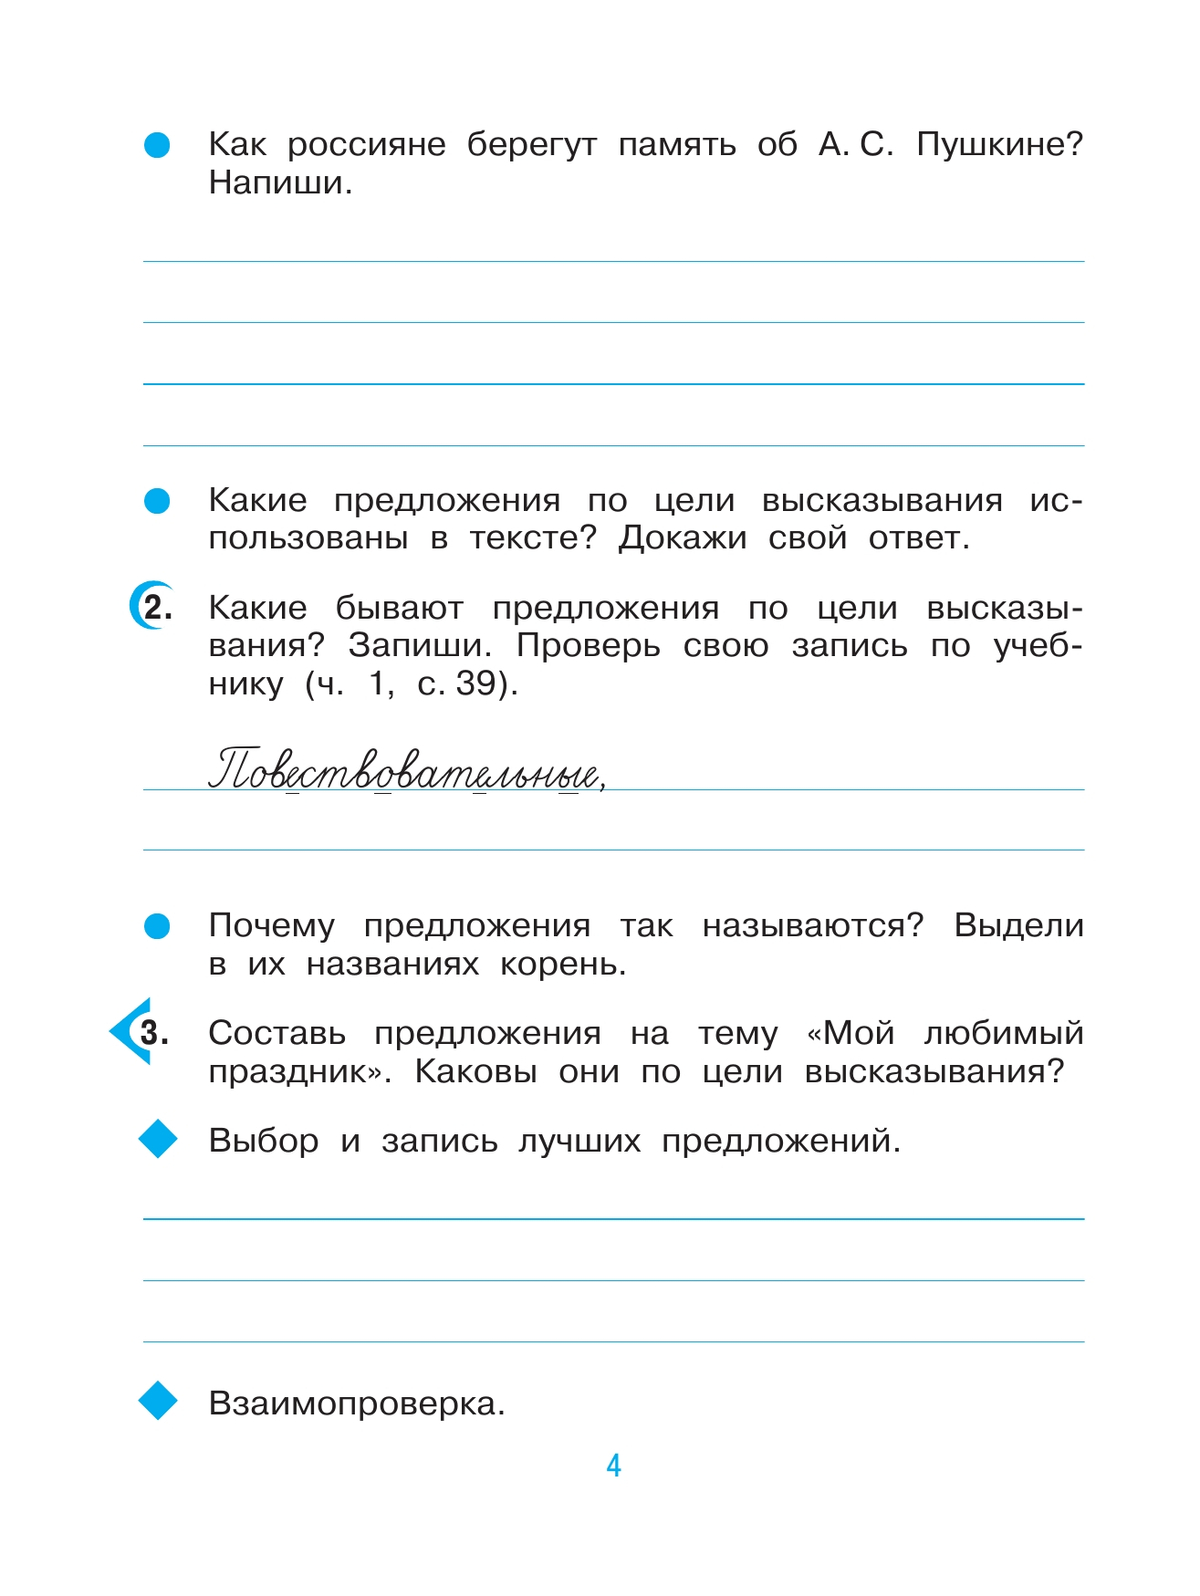 Русский язык. 3 класс. Рабочая тетрадь. В 2 ч. Часть 1 3